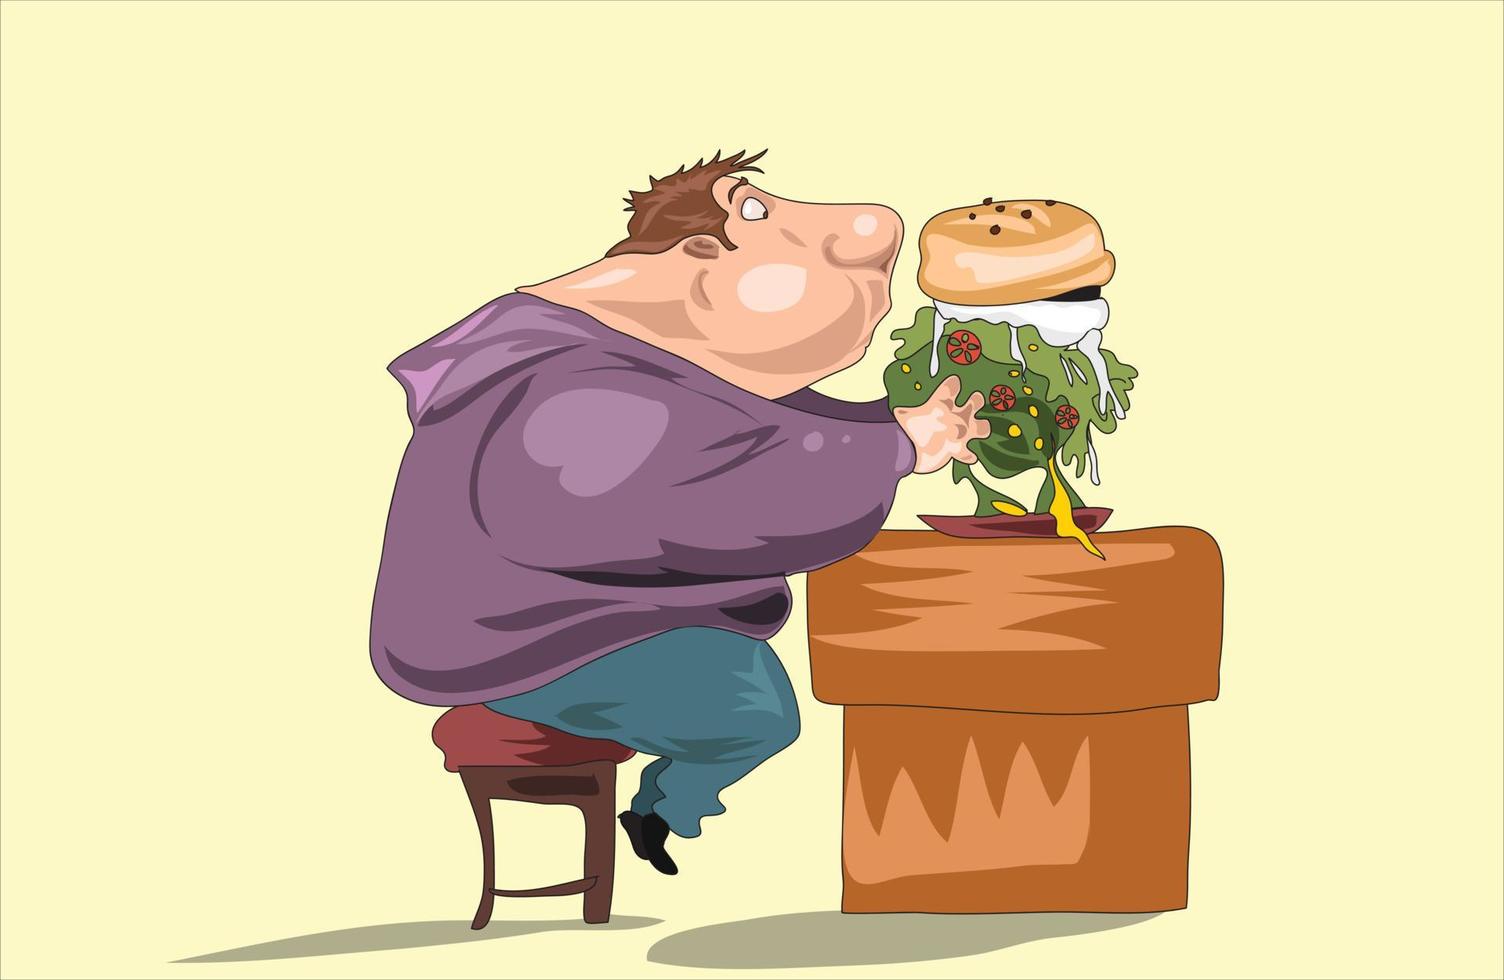 dik zwaarlijvig Mens aan het eten snel voedsel, slecht gewoonte vector illustratie